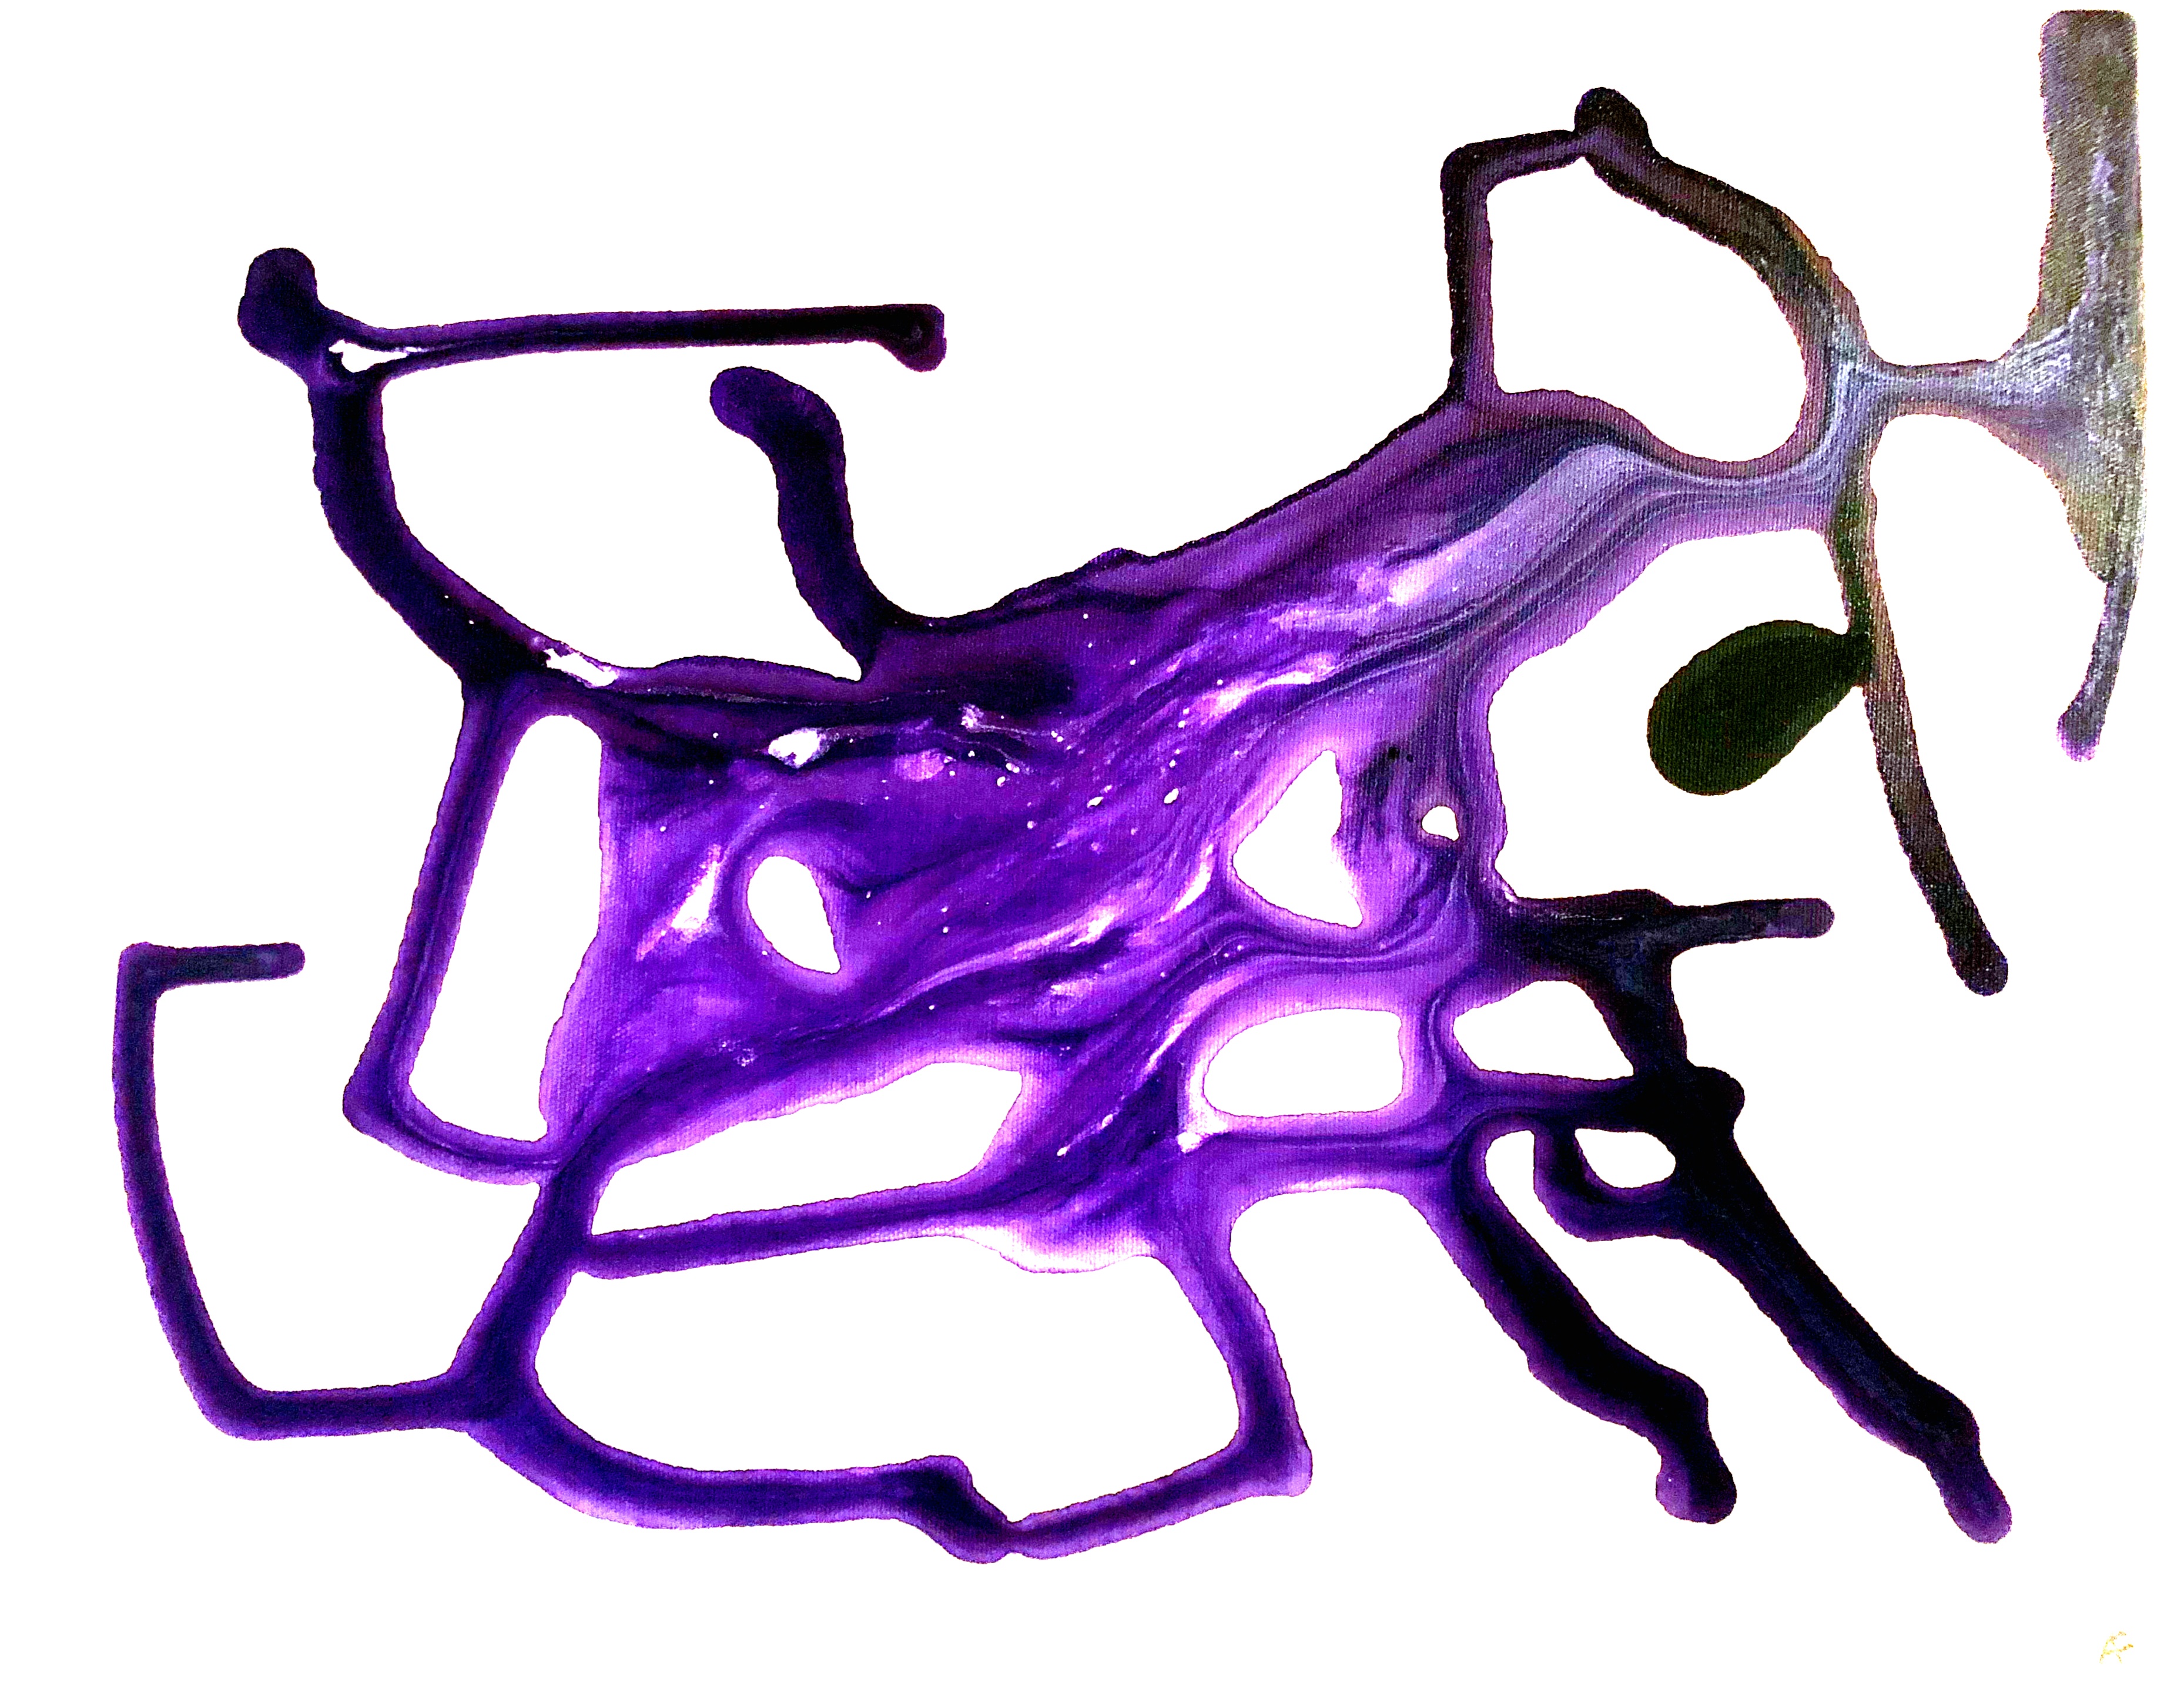 Neuron (2020). 14 x 11, acrylic on canvas.